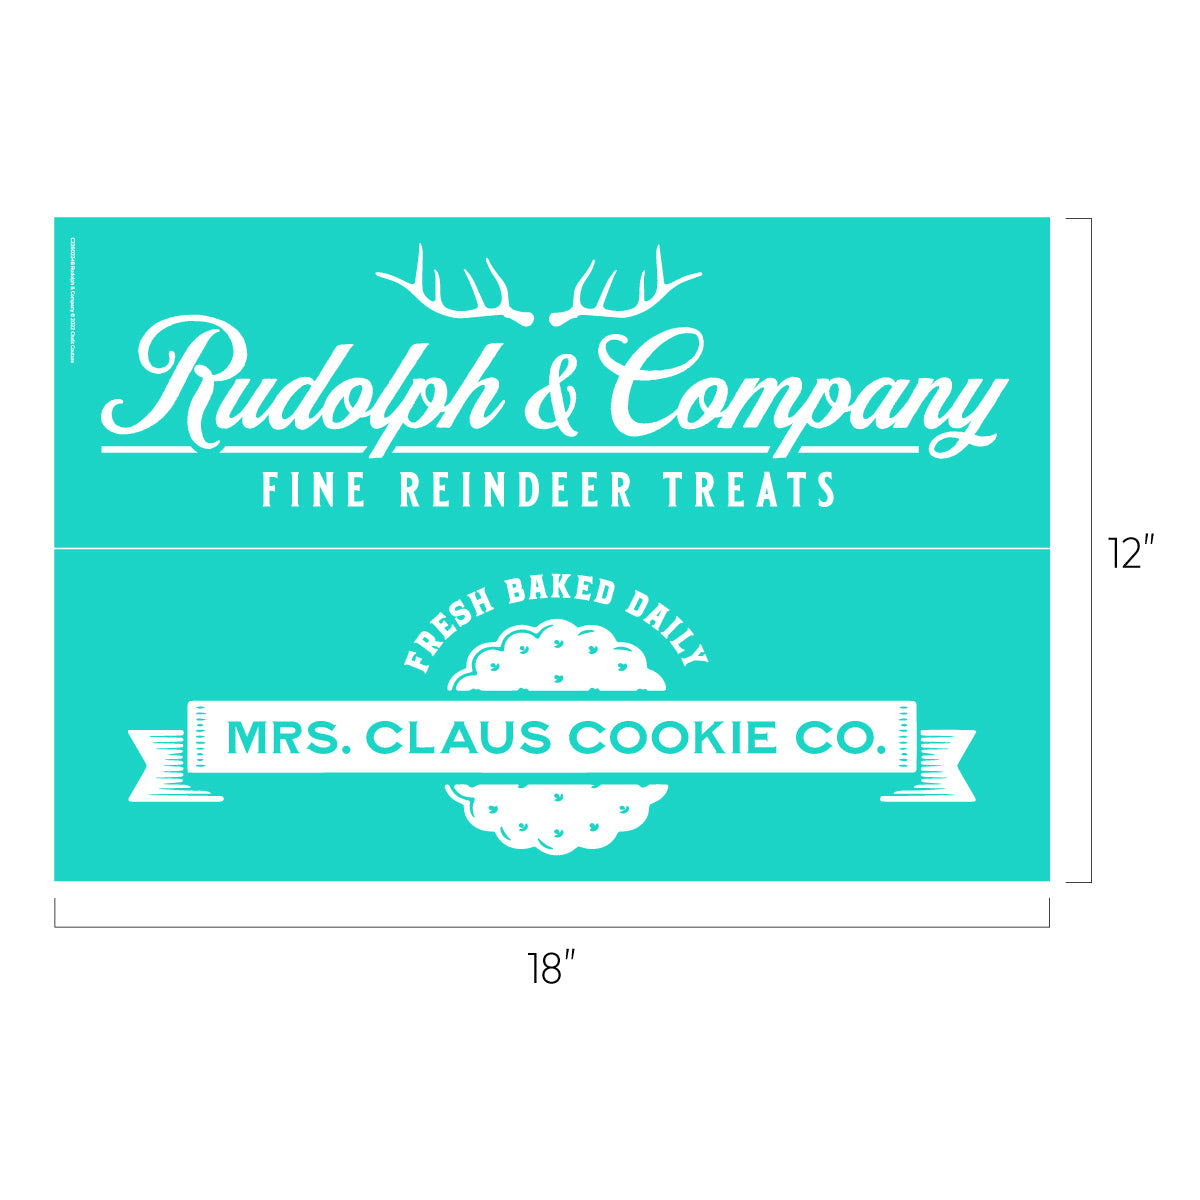 Rudolph & Company